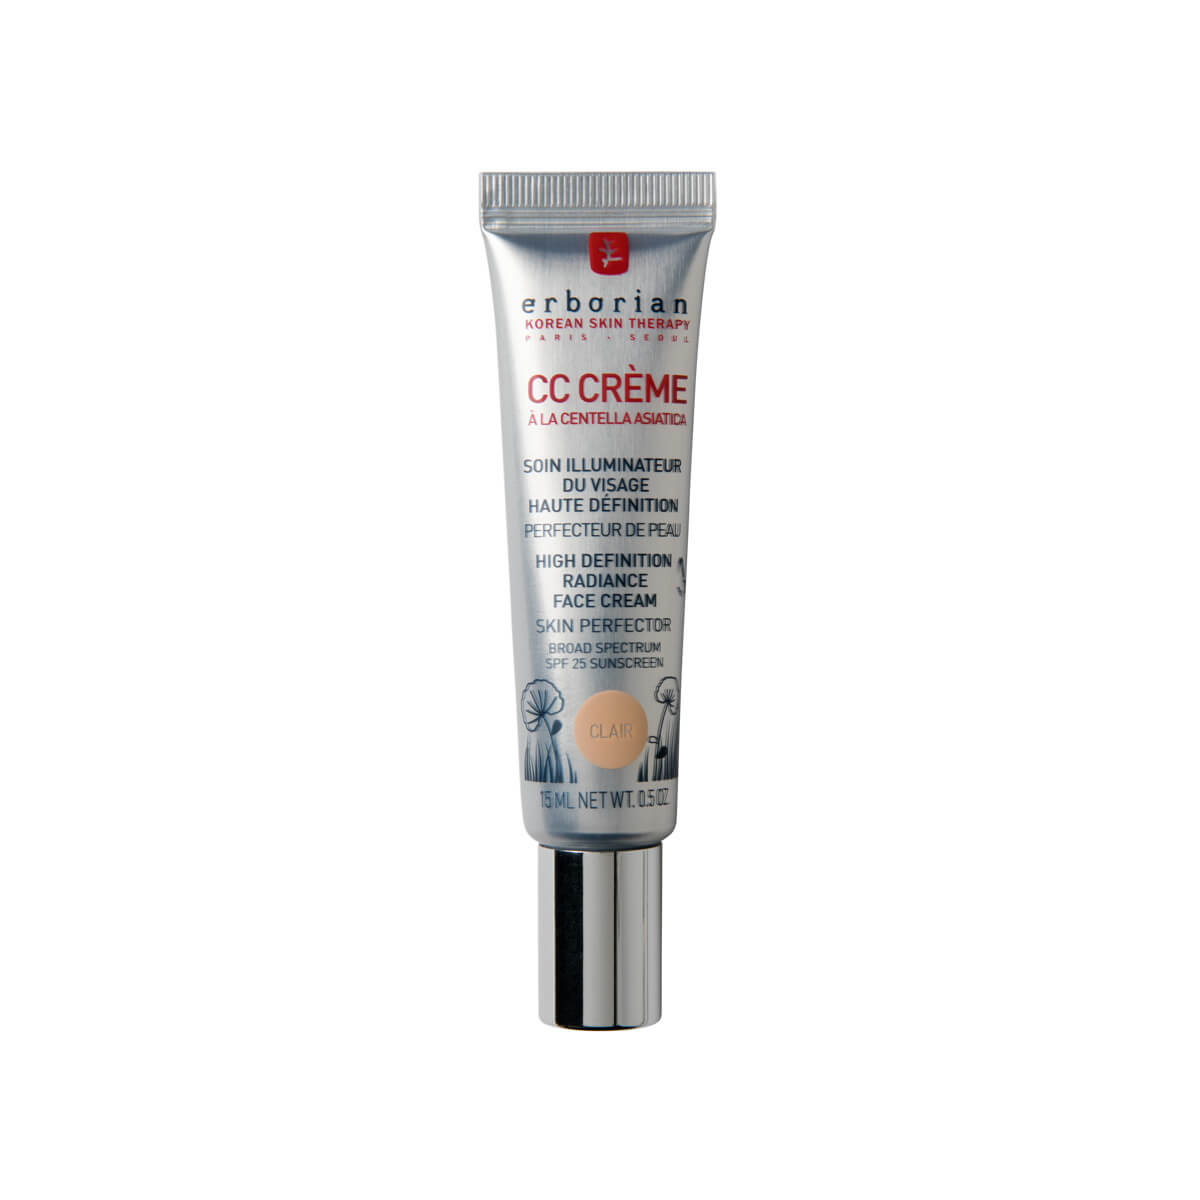 Erborian Bőrvilágosító CC krém (High Definition Radiance Face Cream) 15 ml Clair